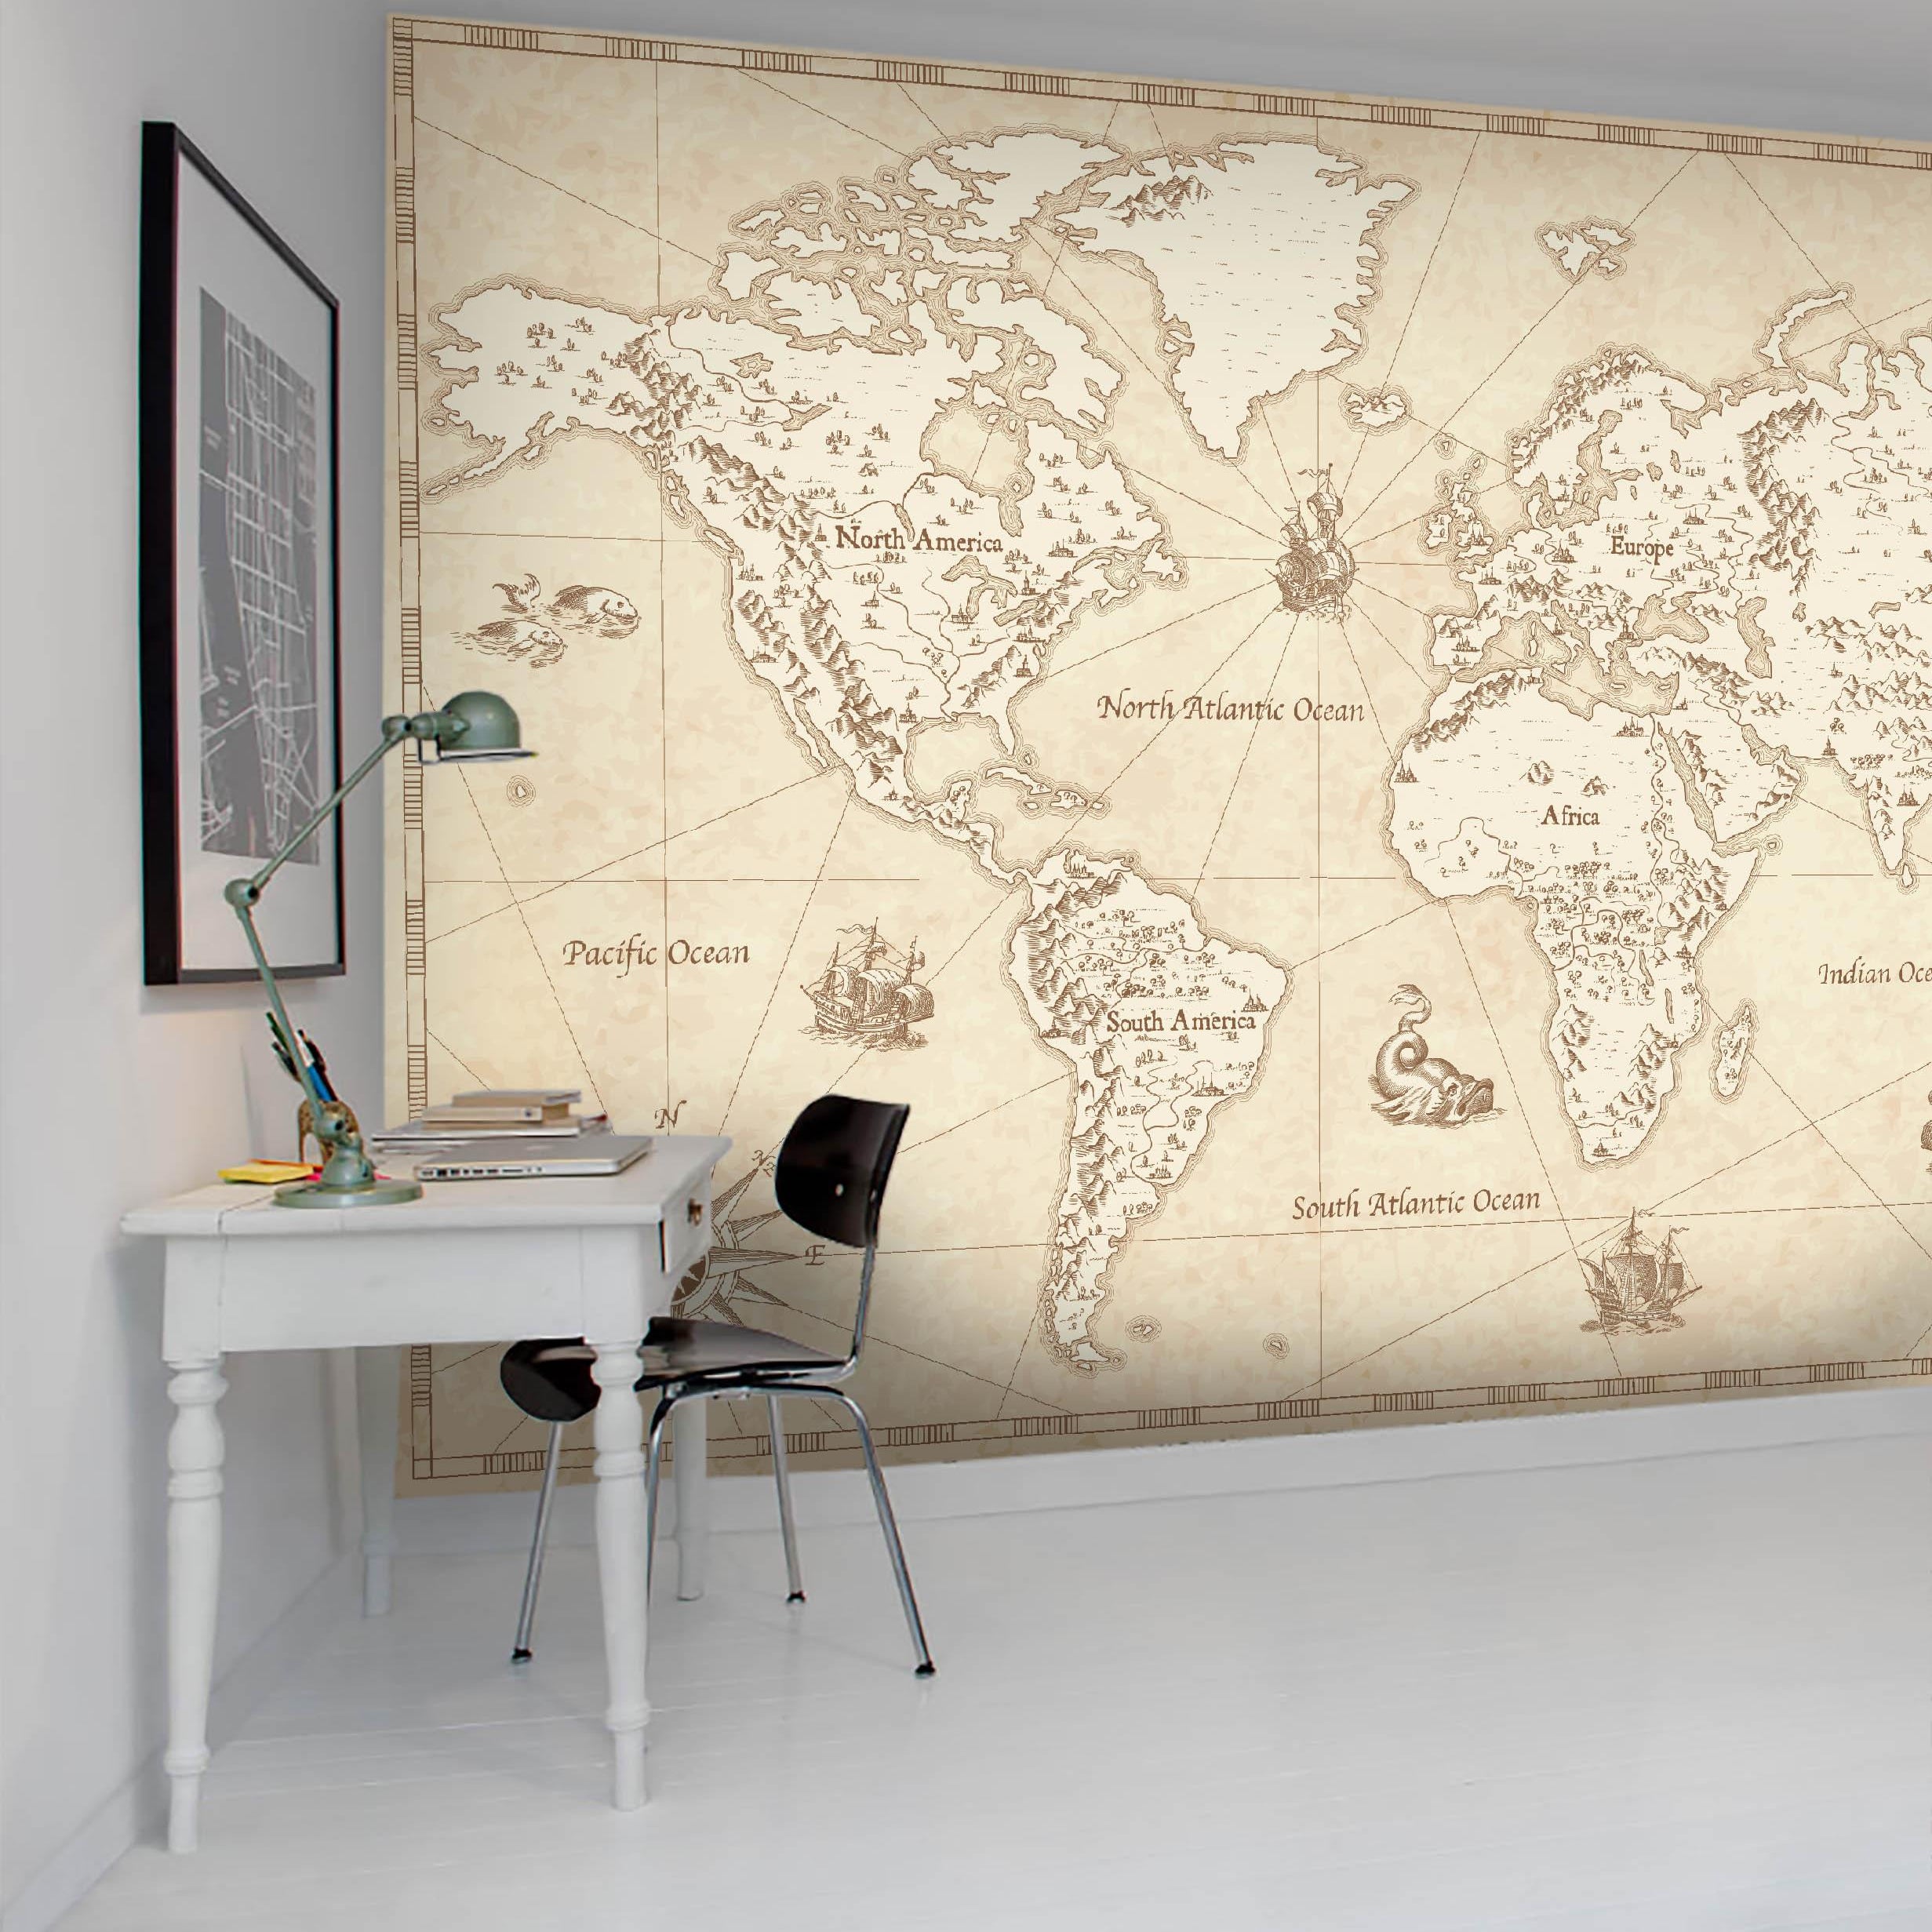 3D Vintage World Map Wall Mural Wallpaper 19- Jess Art Decoration